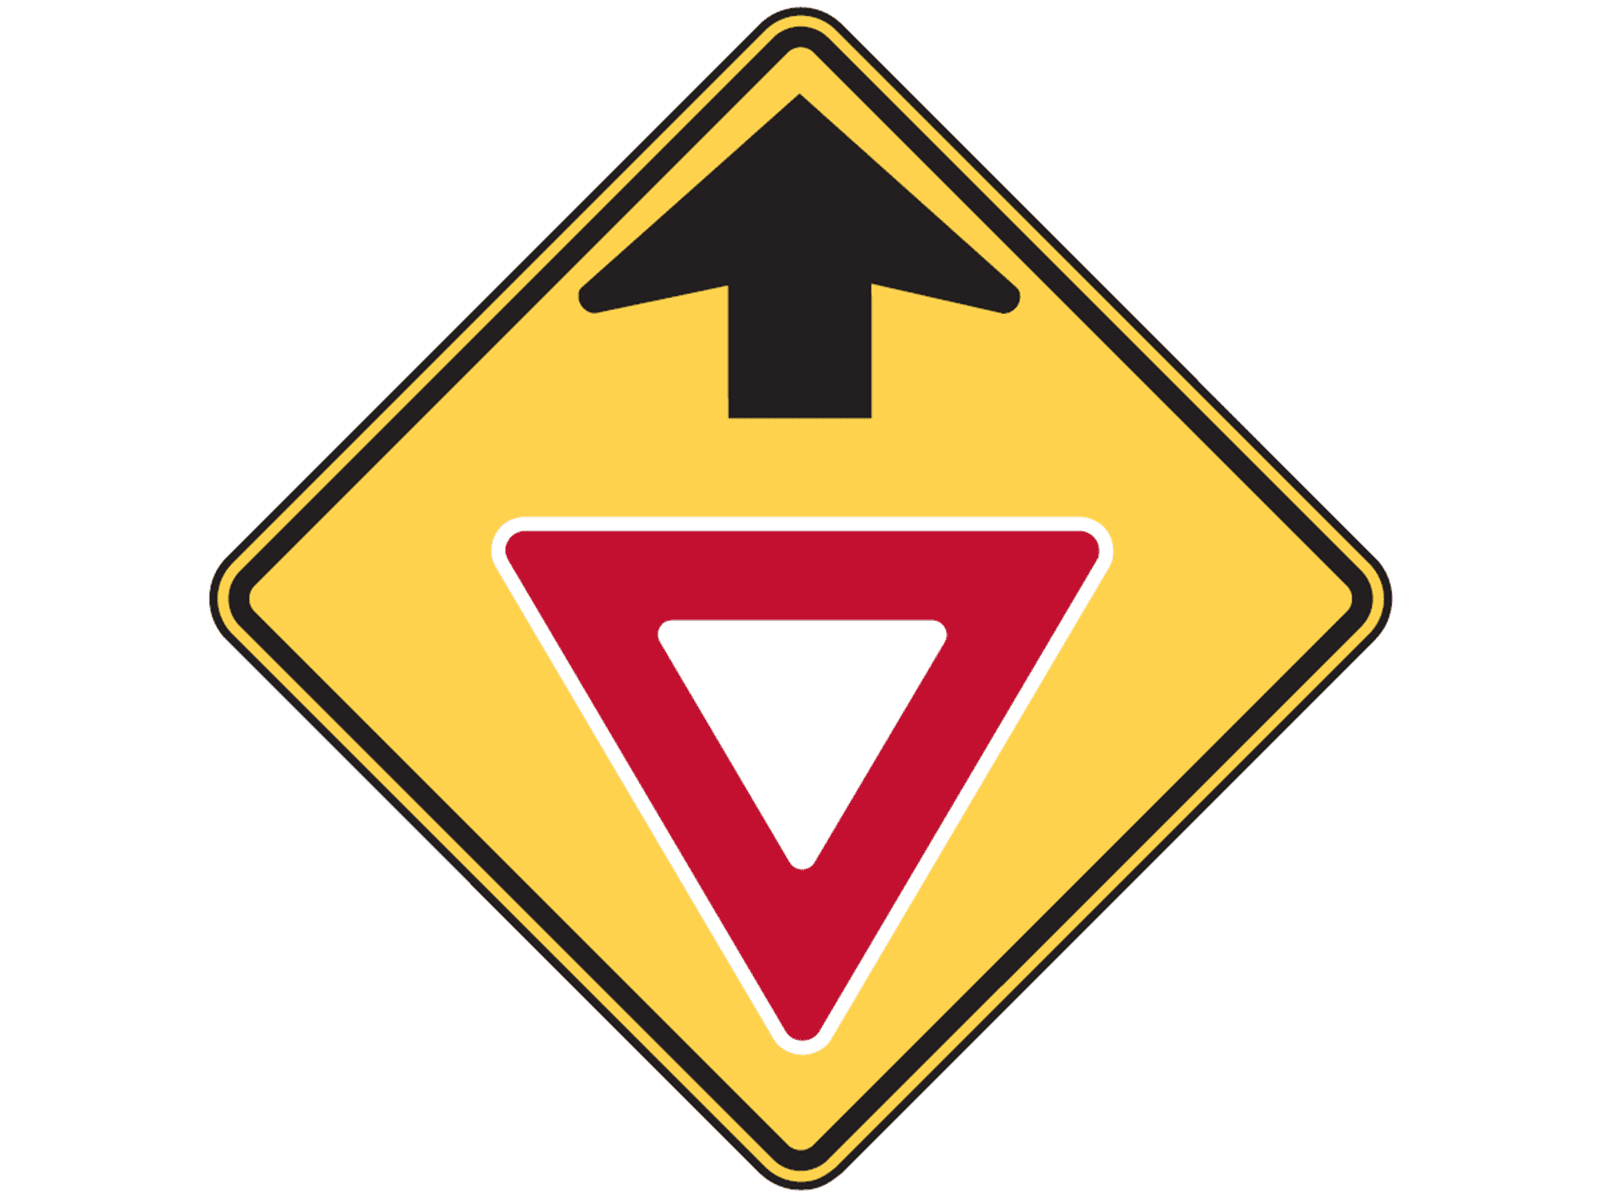 Yield Ahead W3-2 - W3: Advance Traffic Control